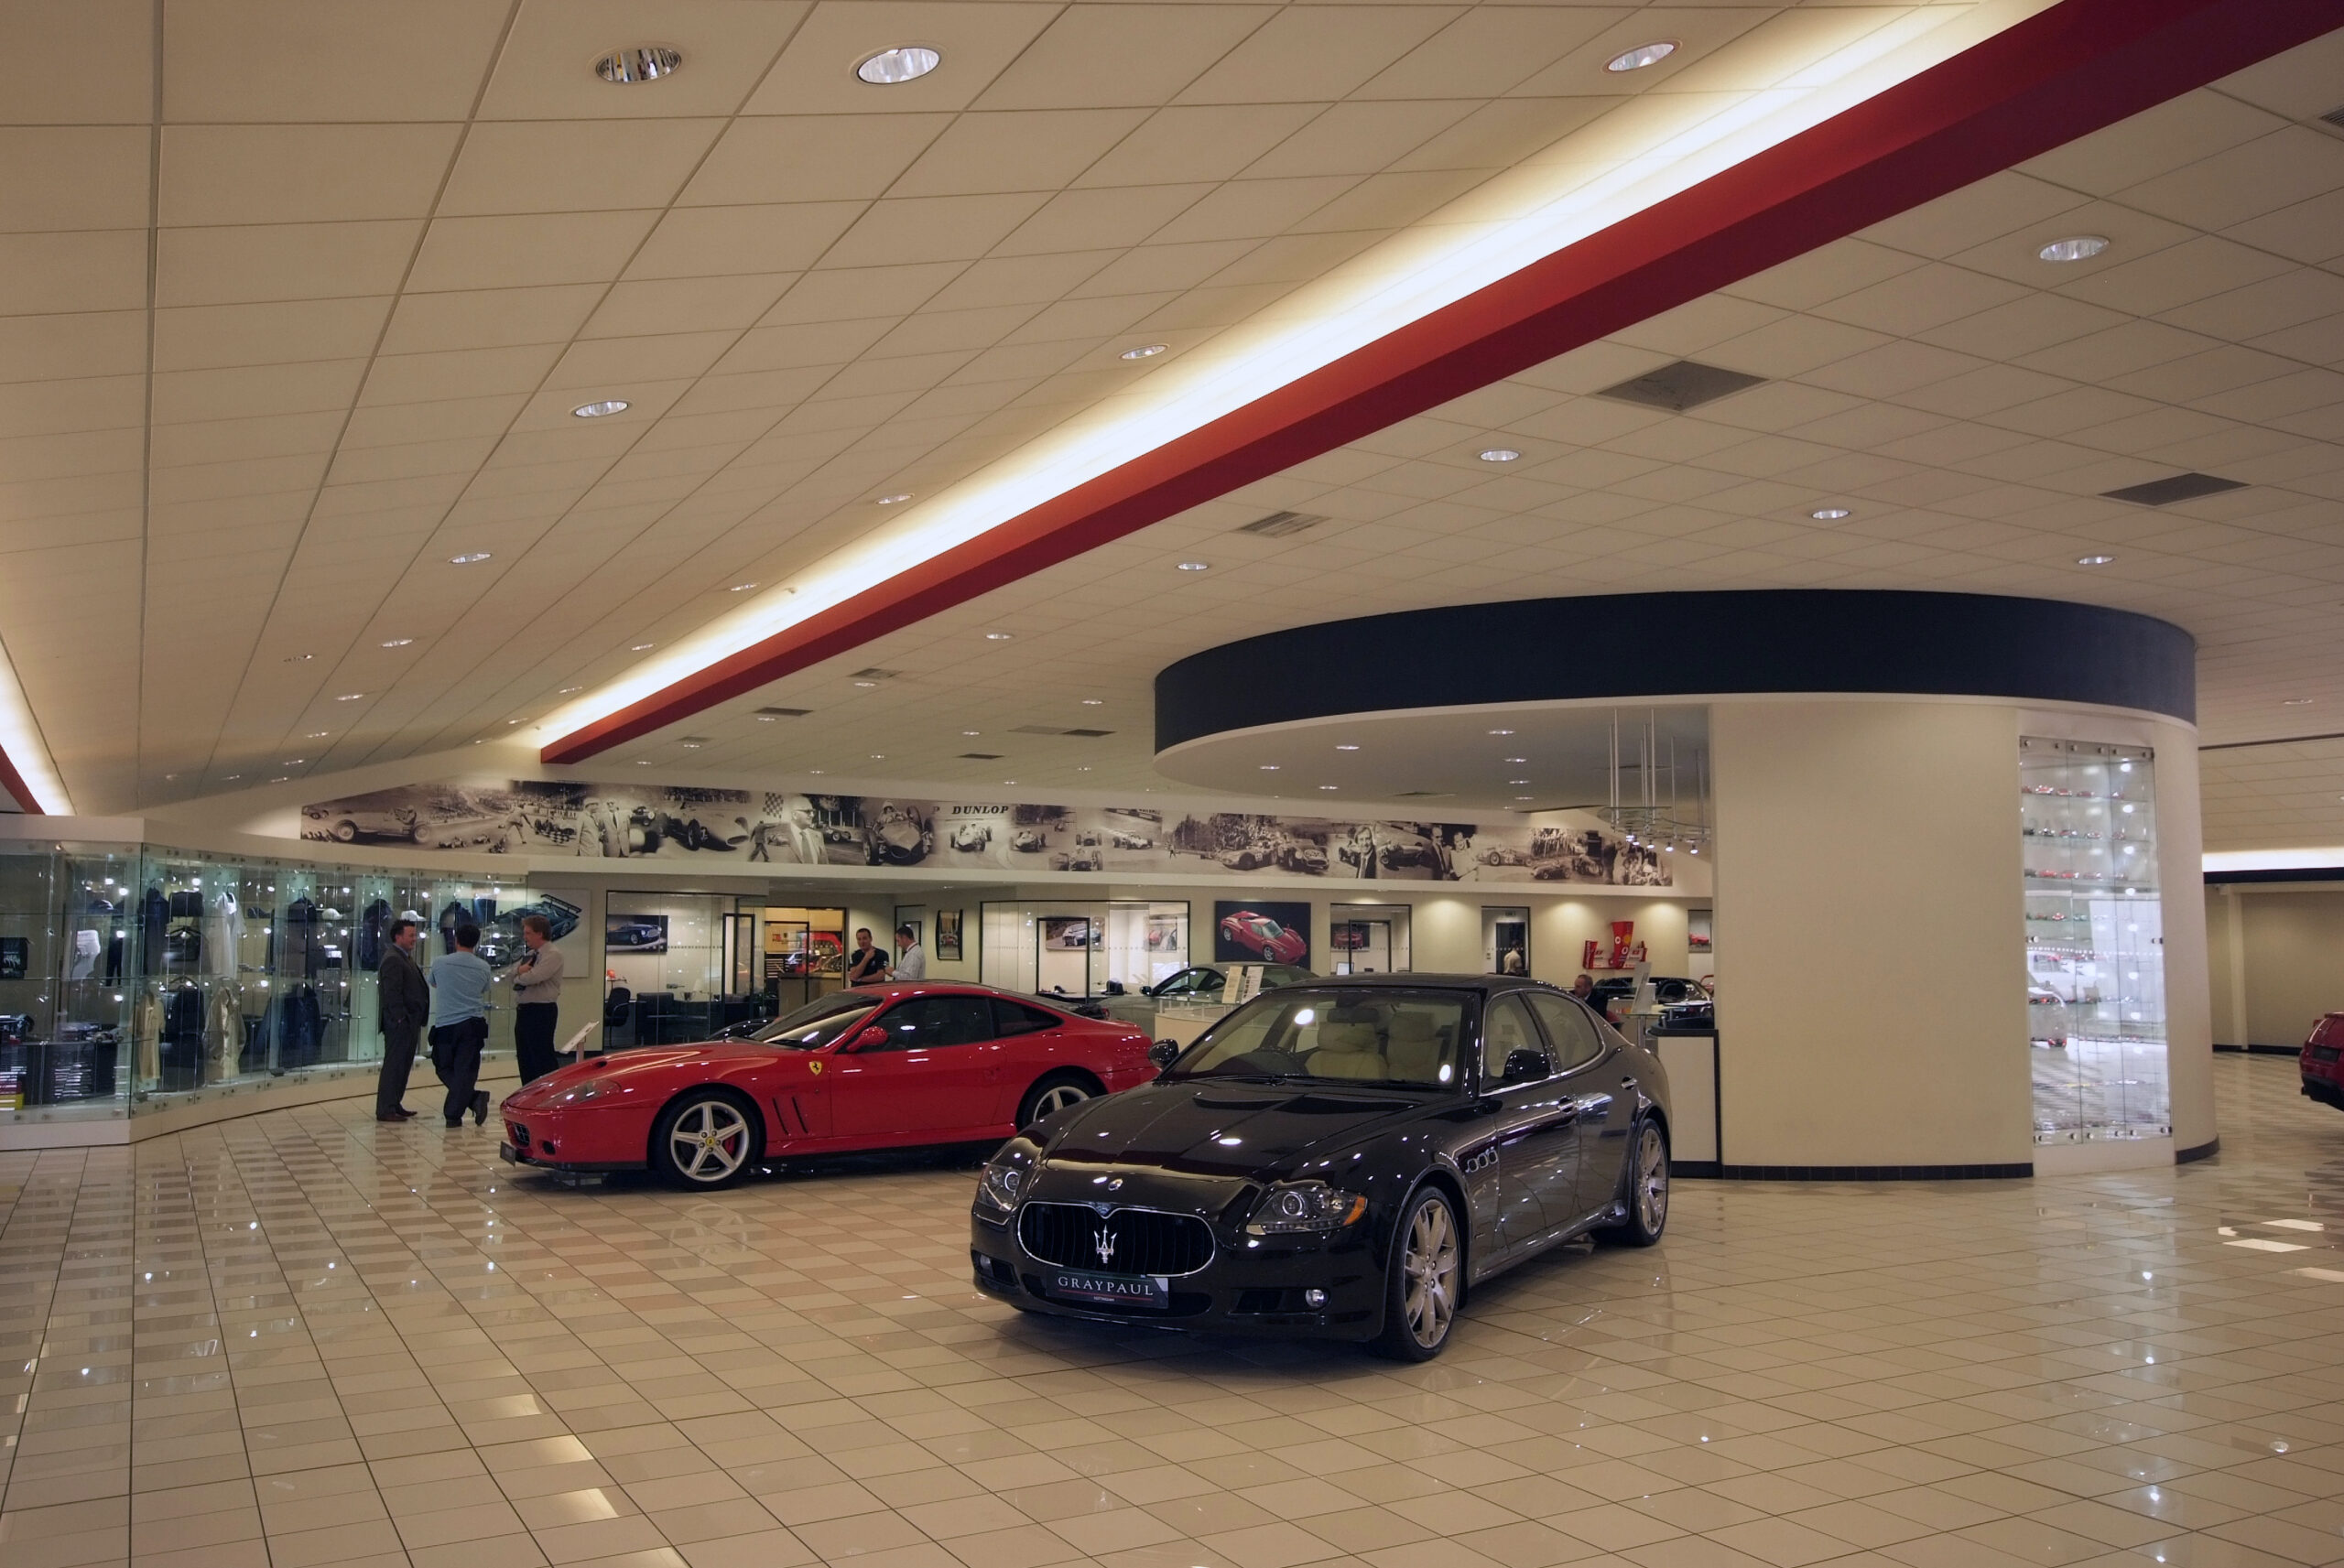 Tamlite Retail Graypaul Ferrari showroom car display